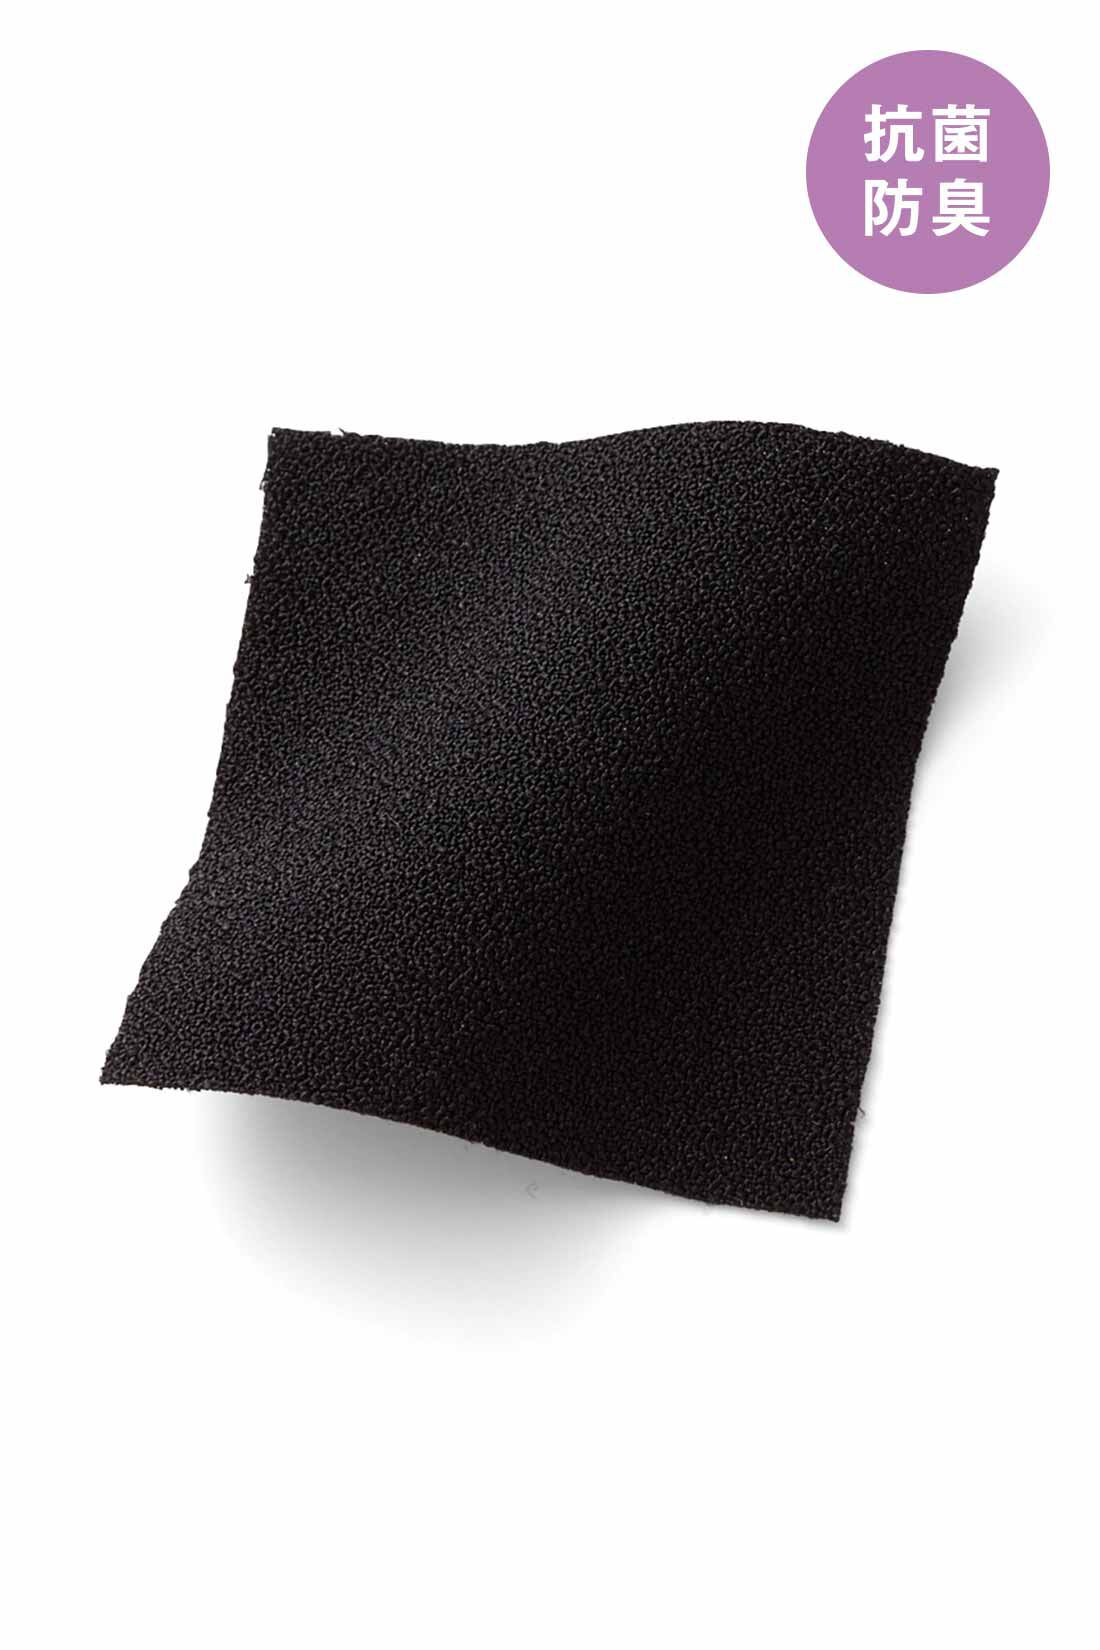 IEDIT[イディット]　抗菌防臭がうれしい 後ろ姿も美しいバックプリーツトップス〈ブラック〉|きちんと感のある上品な布はく素材なのに伸びやかな着心地。 ※お届けするカラーとは異なります。